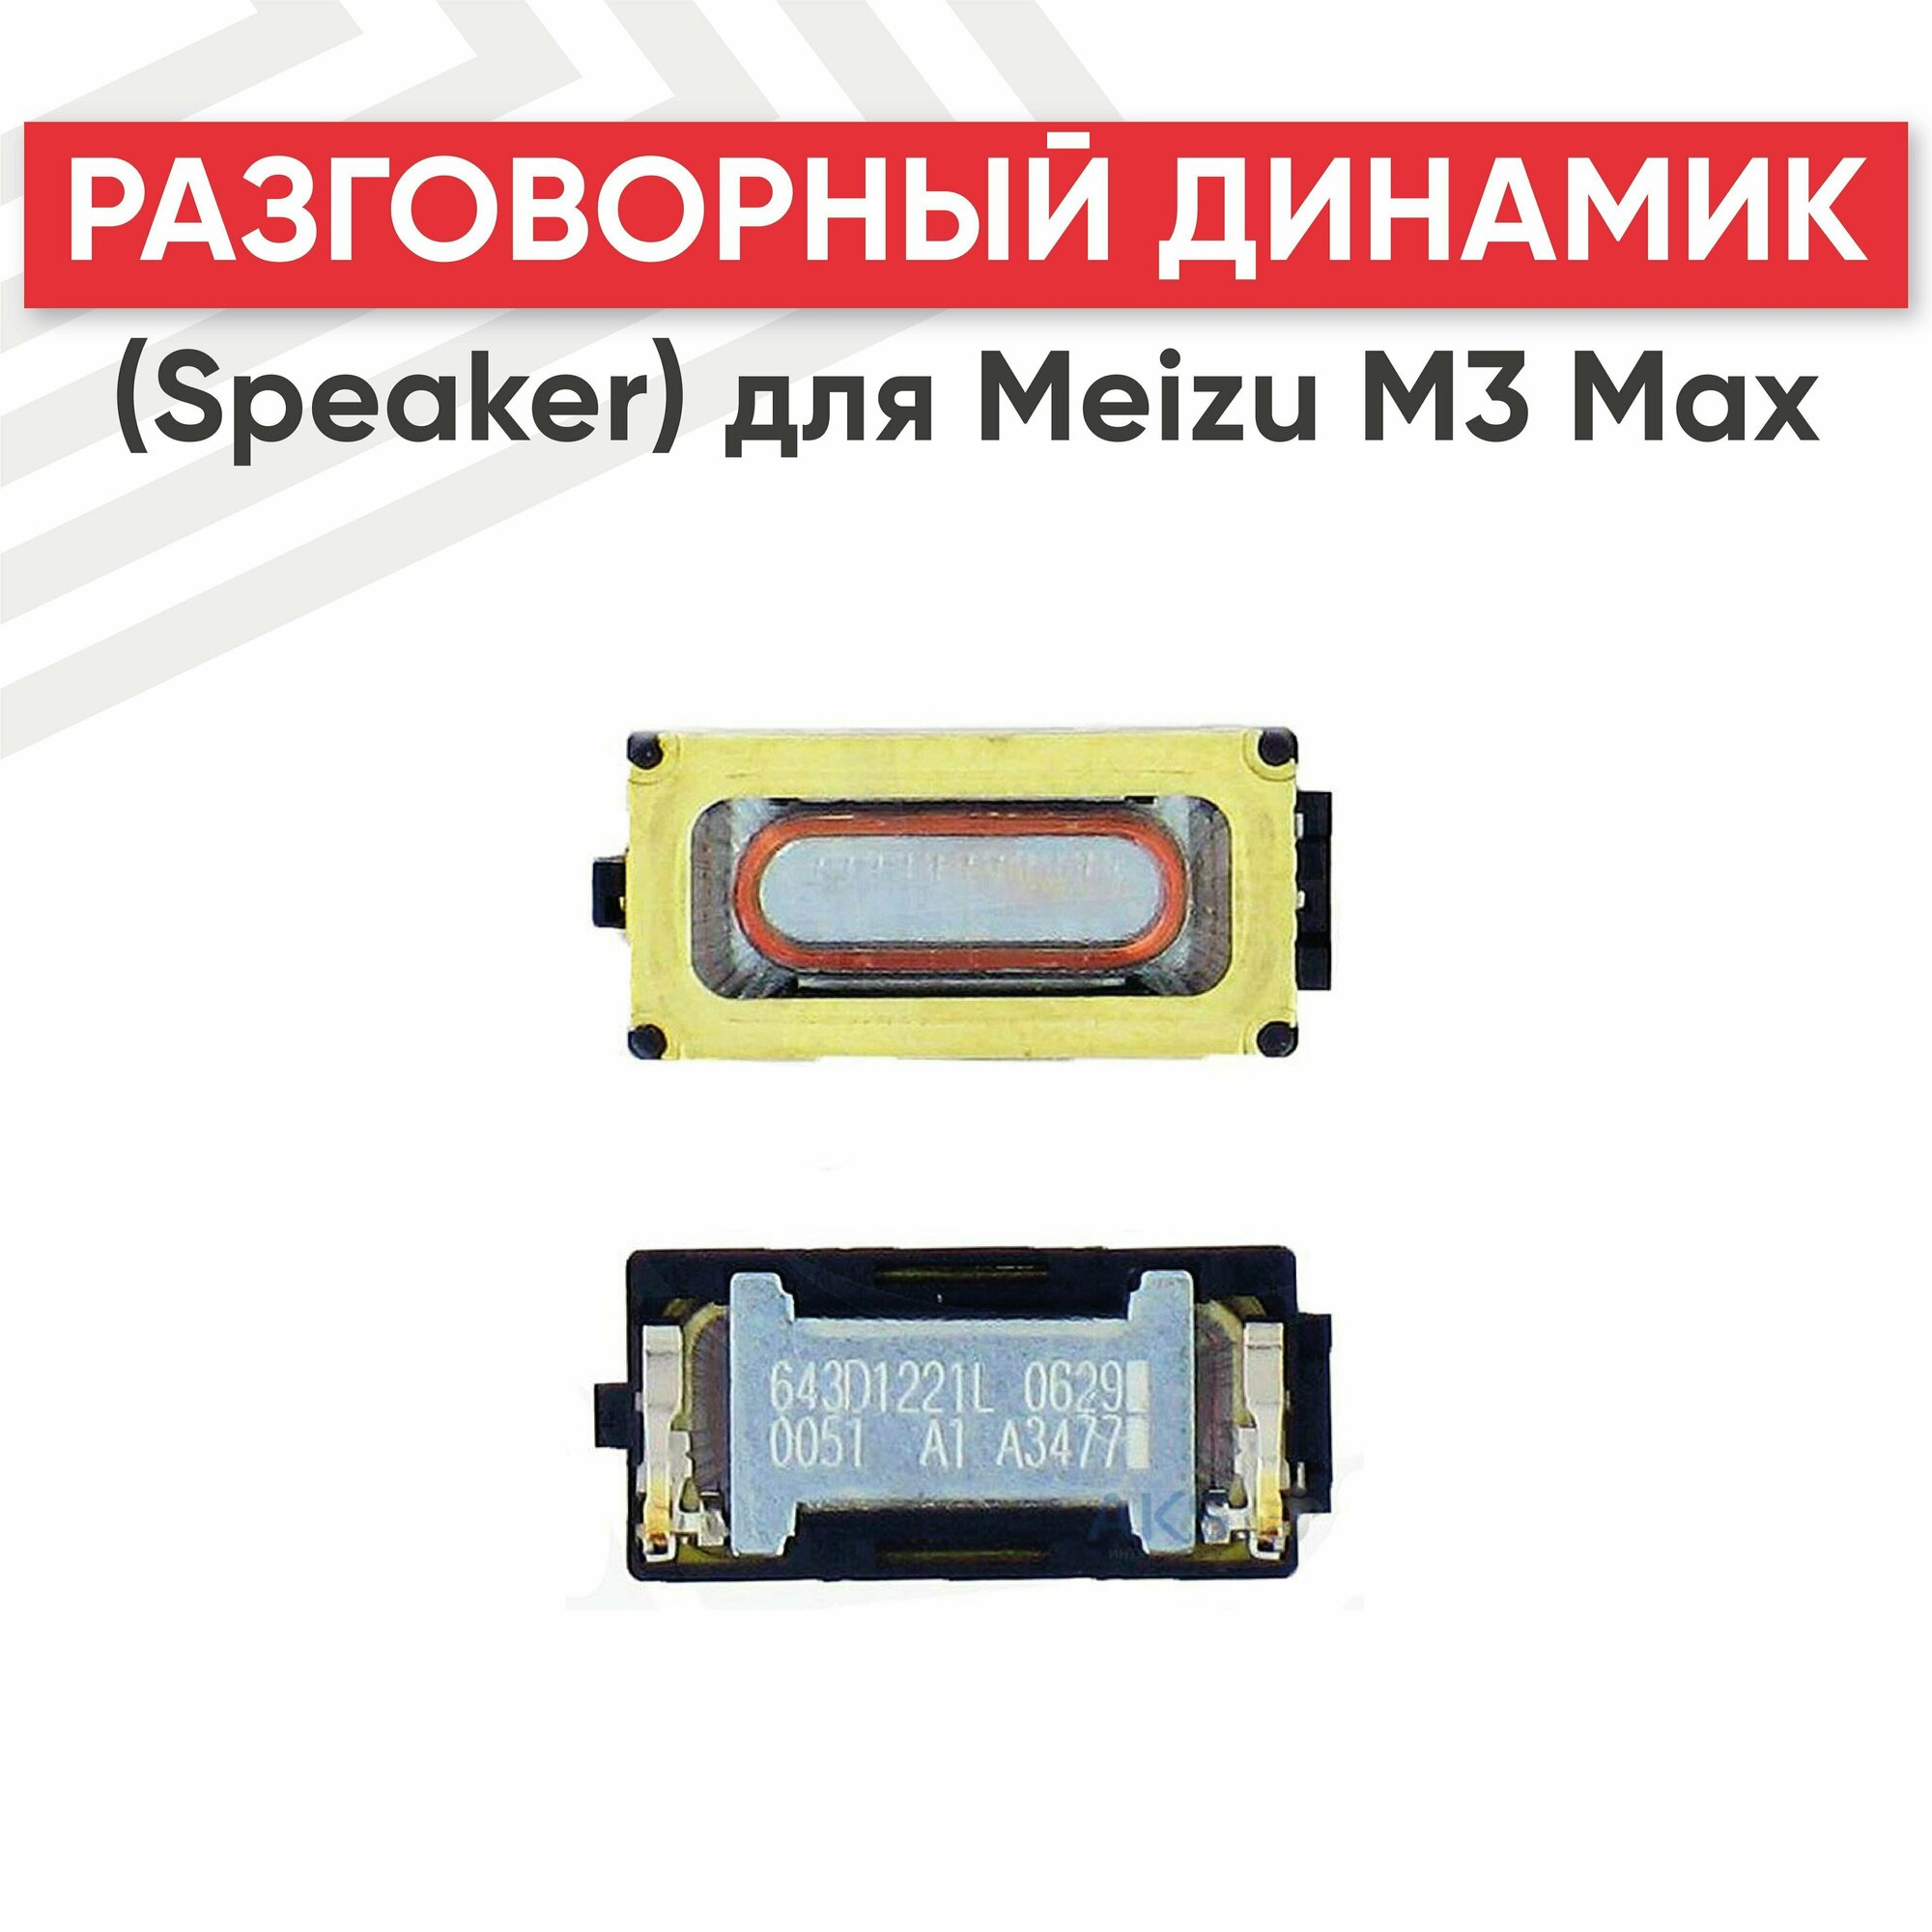 Разговорный динамик (Speaker) RageX для M3 Max